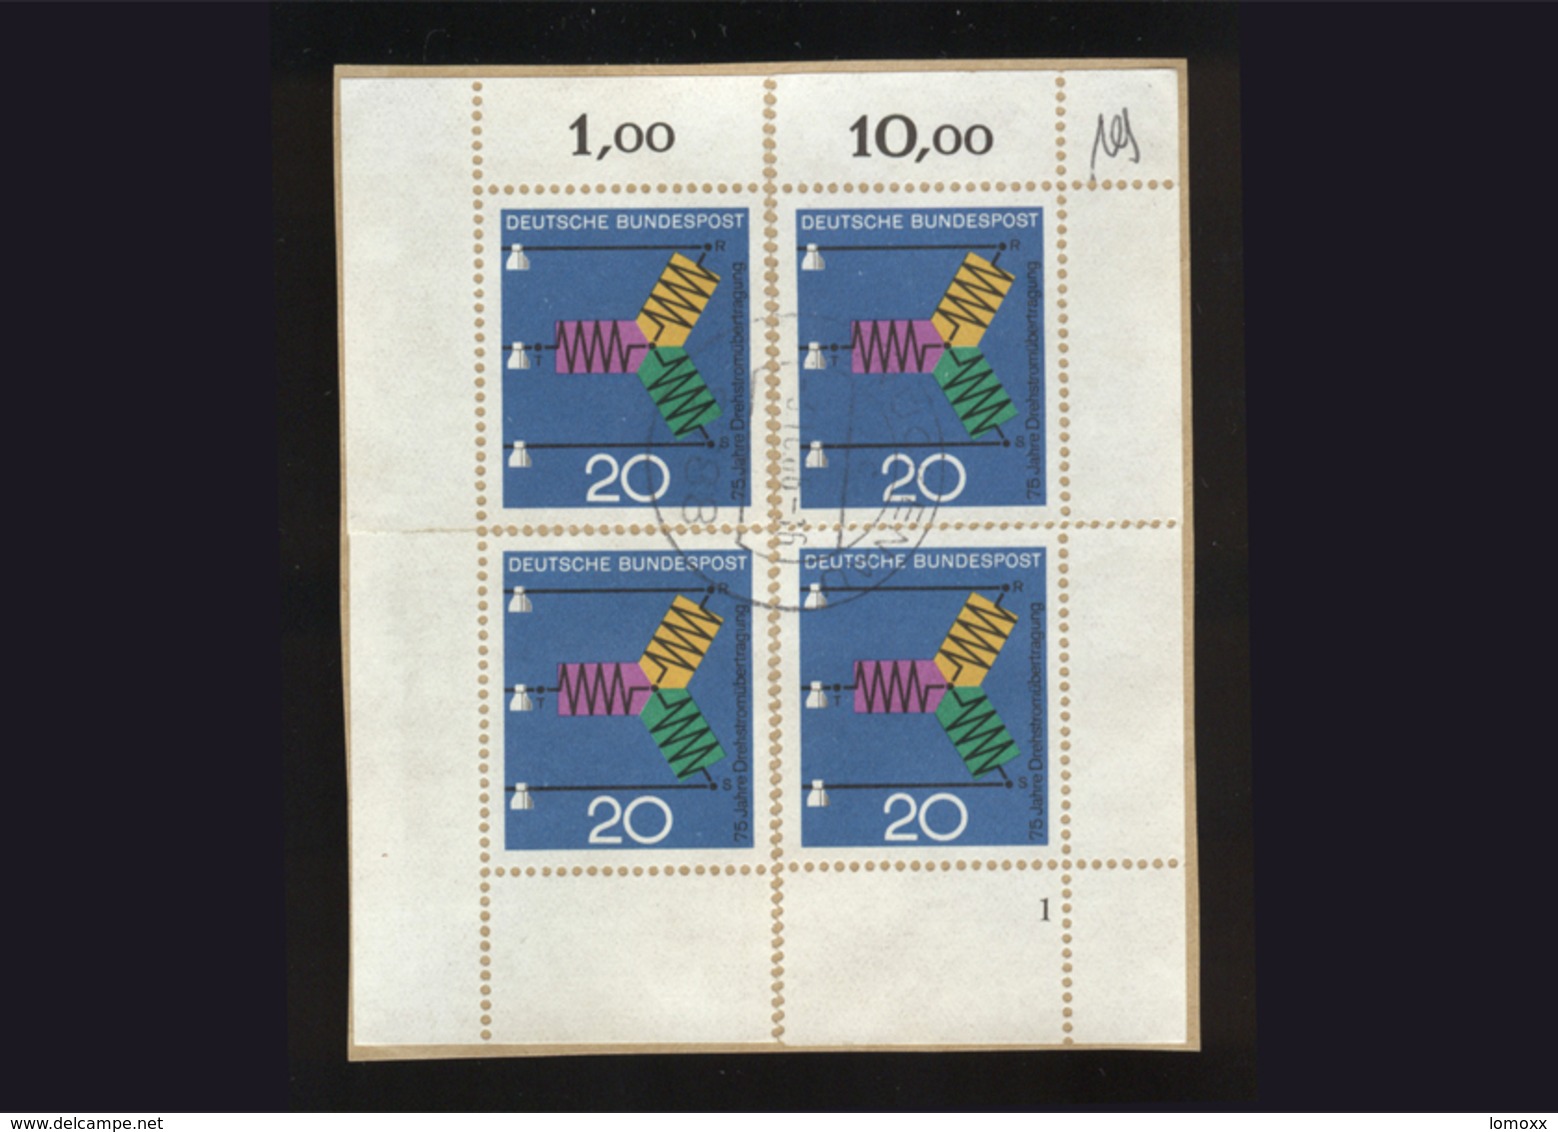 BRD 1966, Briefstück Mit 4 X Eckrand Michel-Nr. 521, Fortschritt In Technik Und Wissenschaft, 20 Pf., Gestempelt - Usados